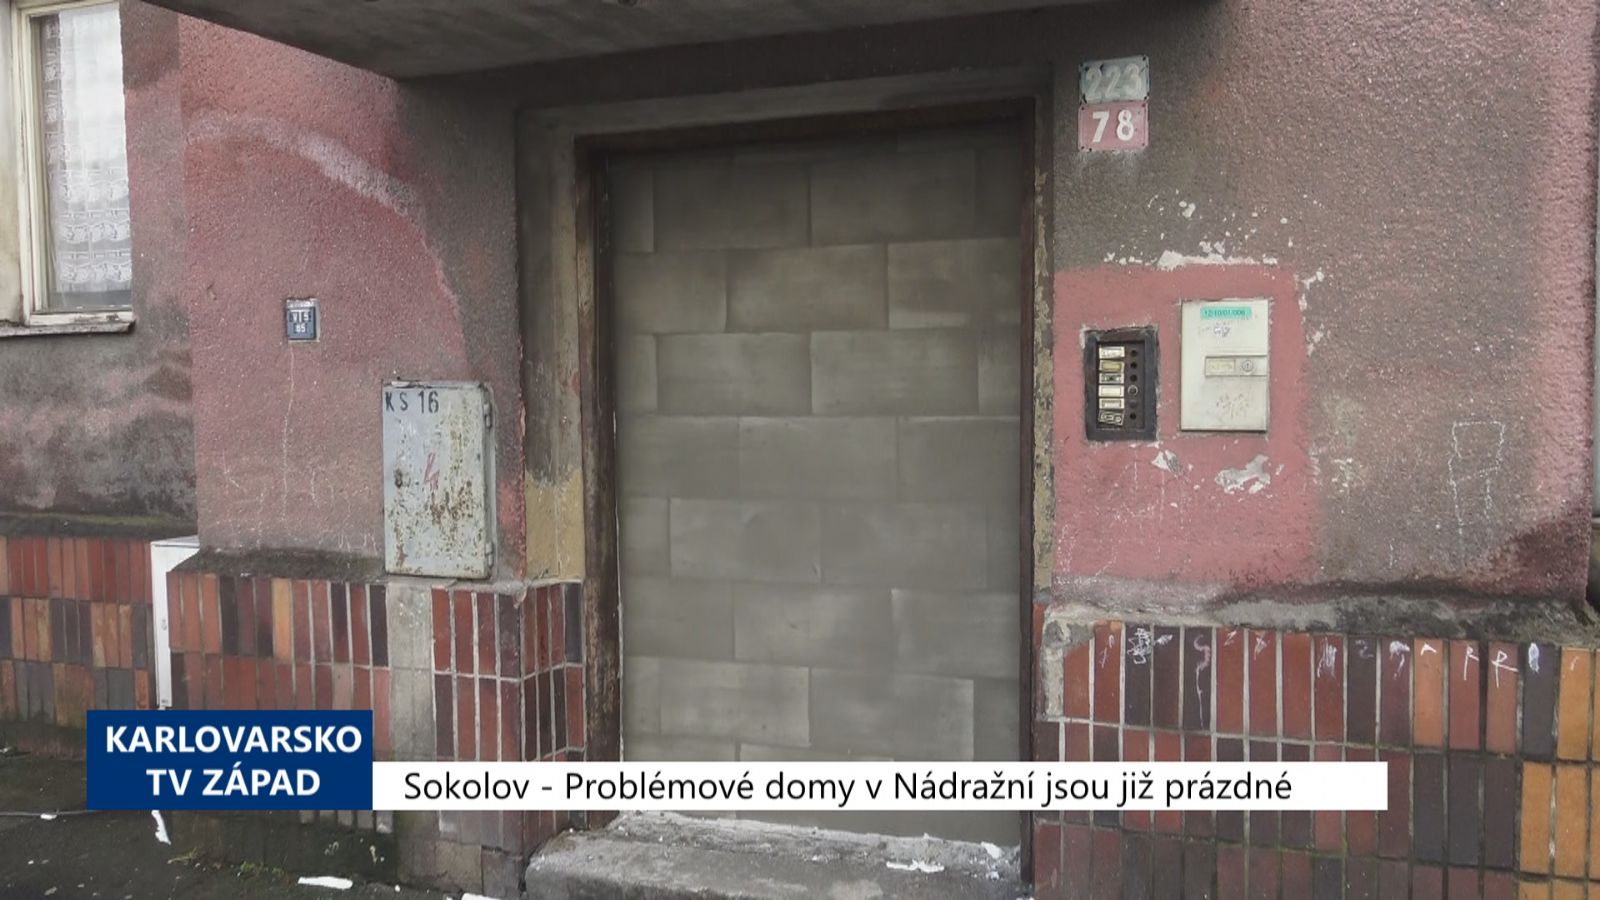 Sokolov: Problémové domy v Nádražní jsou již prázdné (TV Západ)